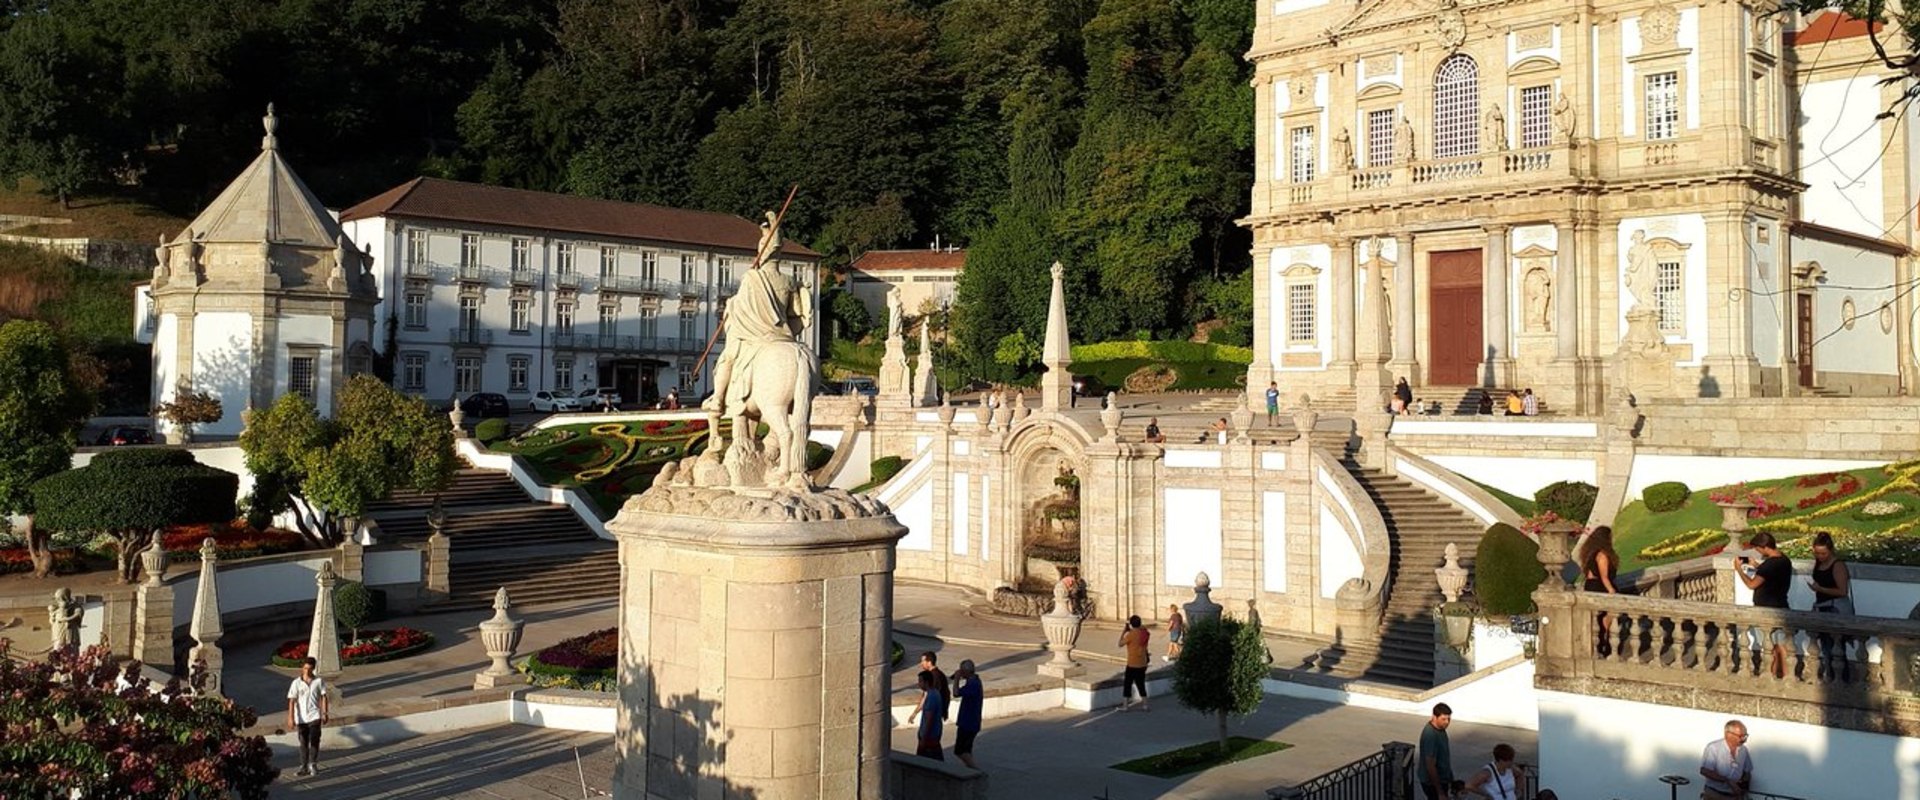 Descobrindo as joias religiosas e turísticas de Braga, Portugal